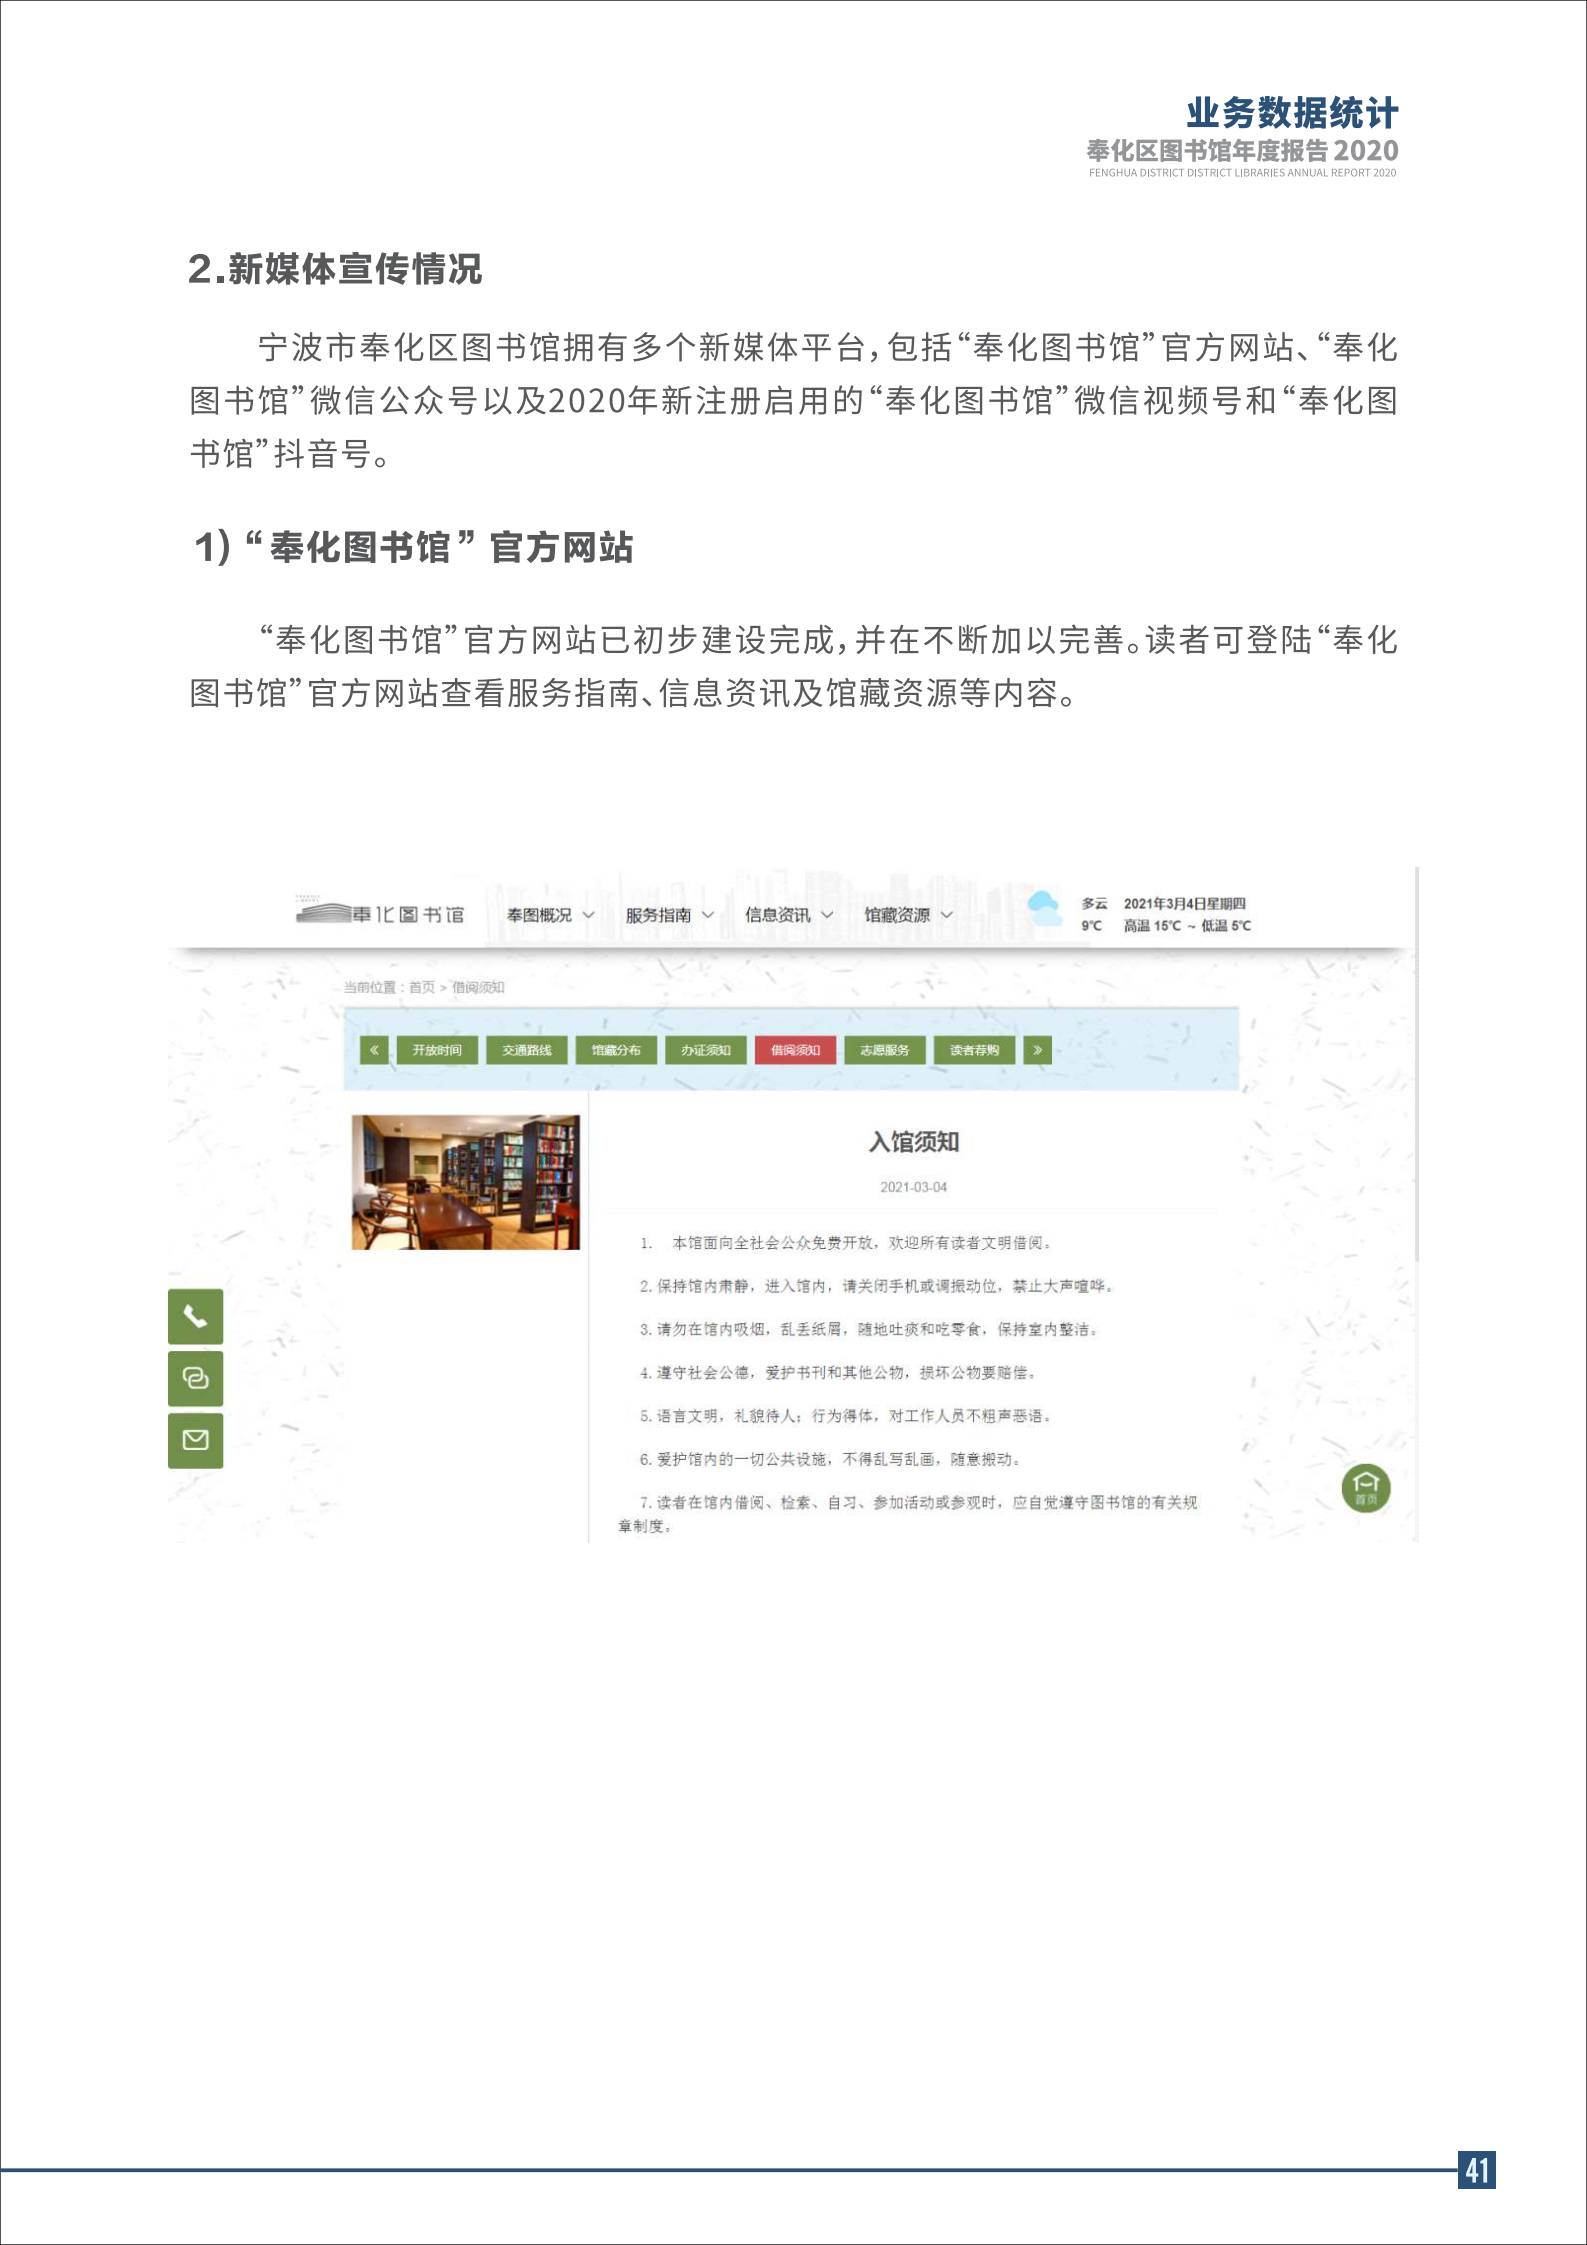 宁波市奉化区图书馆2020年年度报告 终稿_41.png